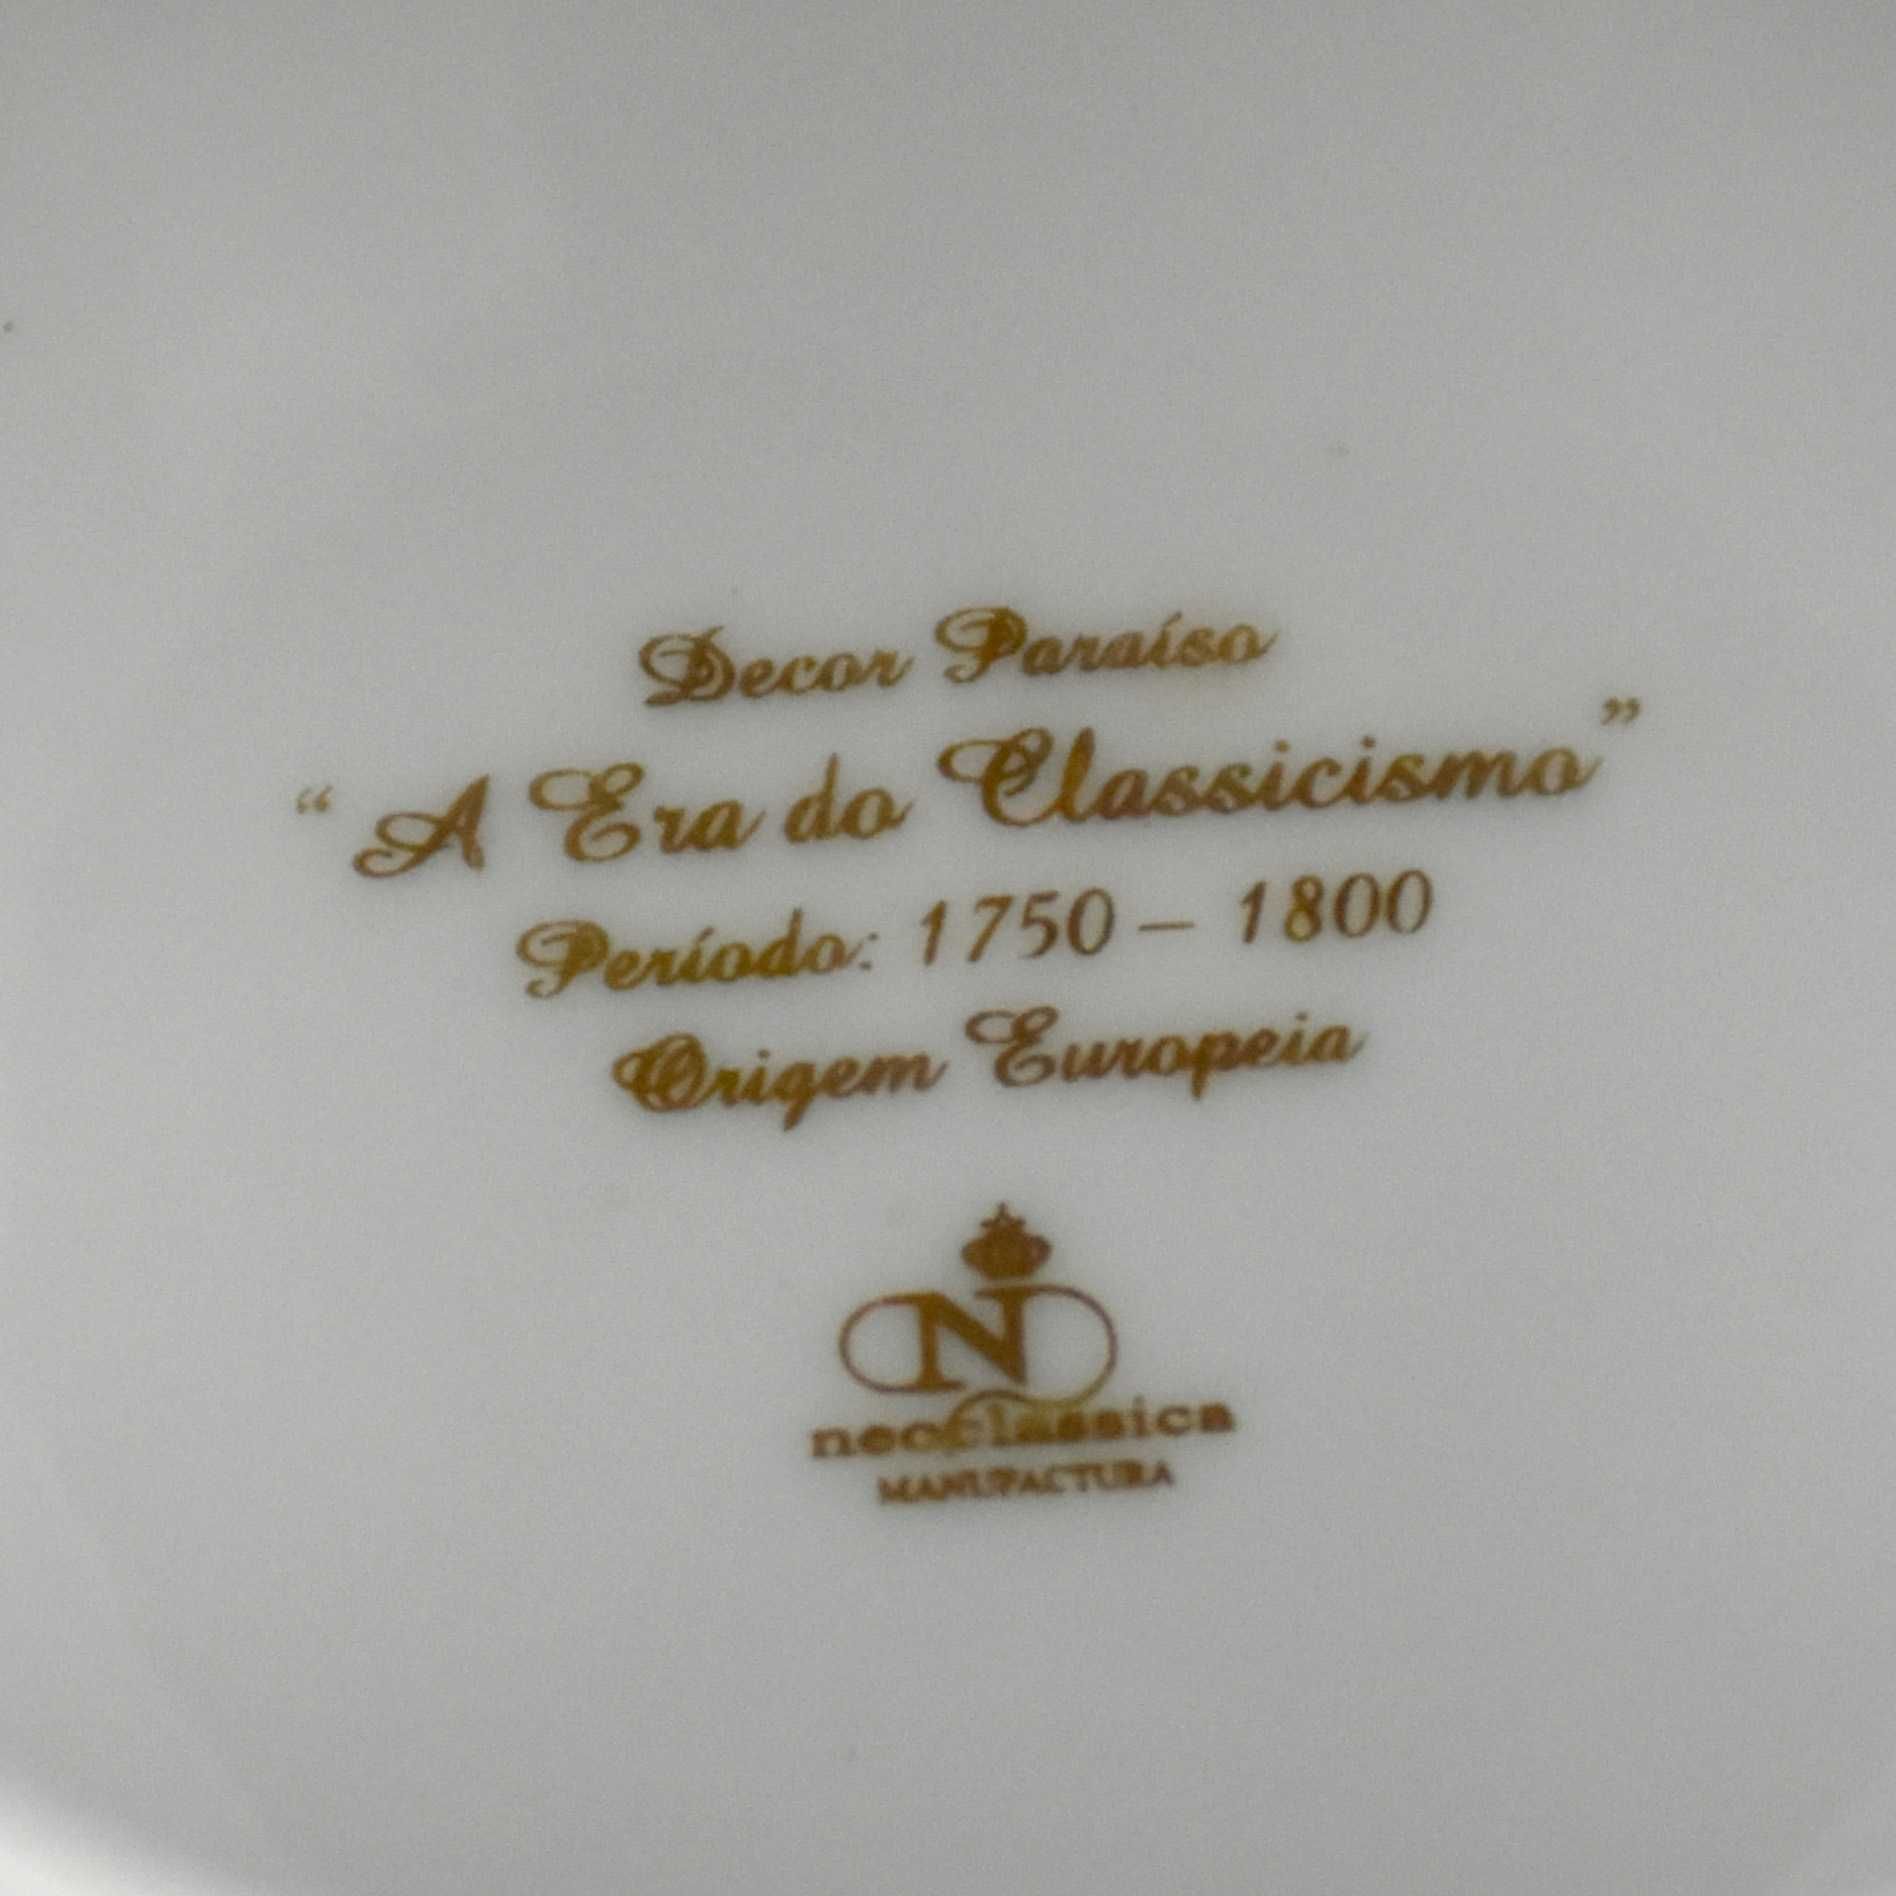 Saleiro porcelana “A Era do Classicismo” Decor Paraíso